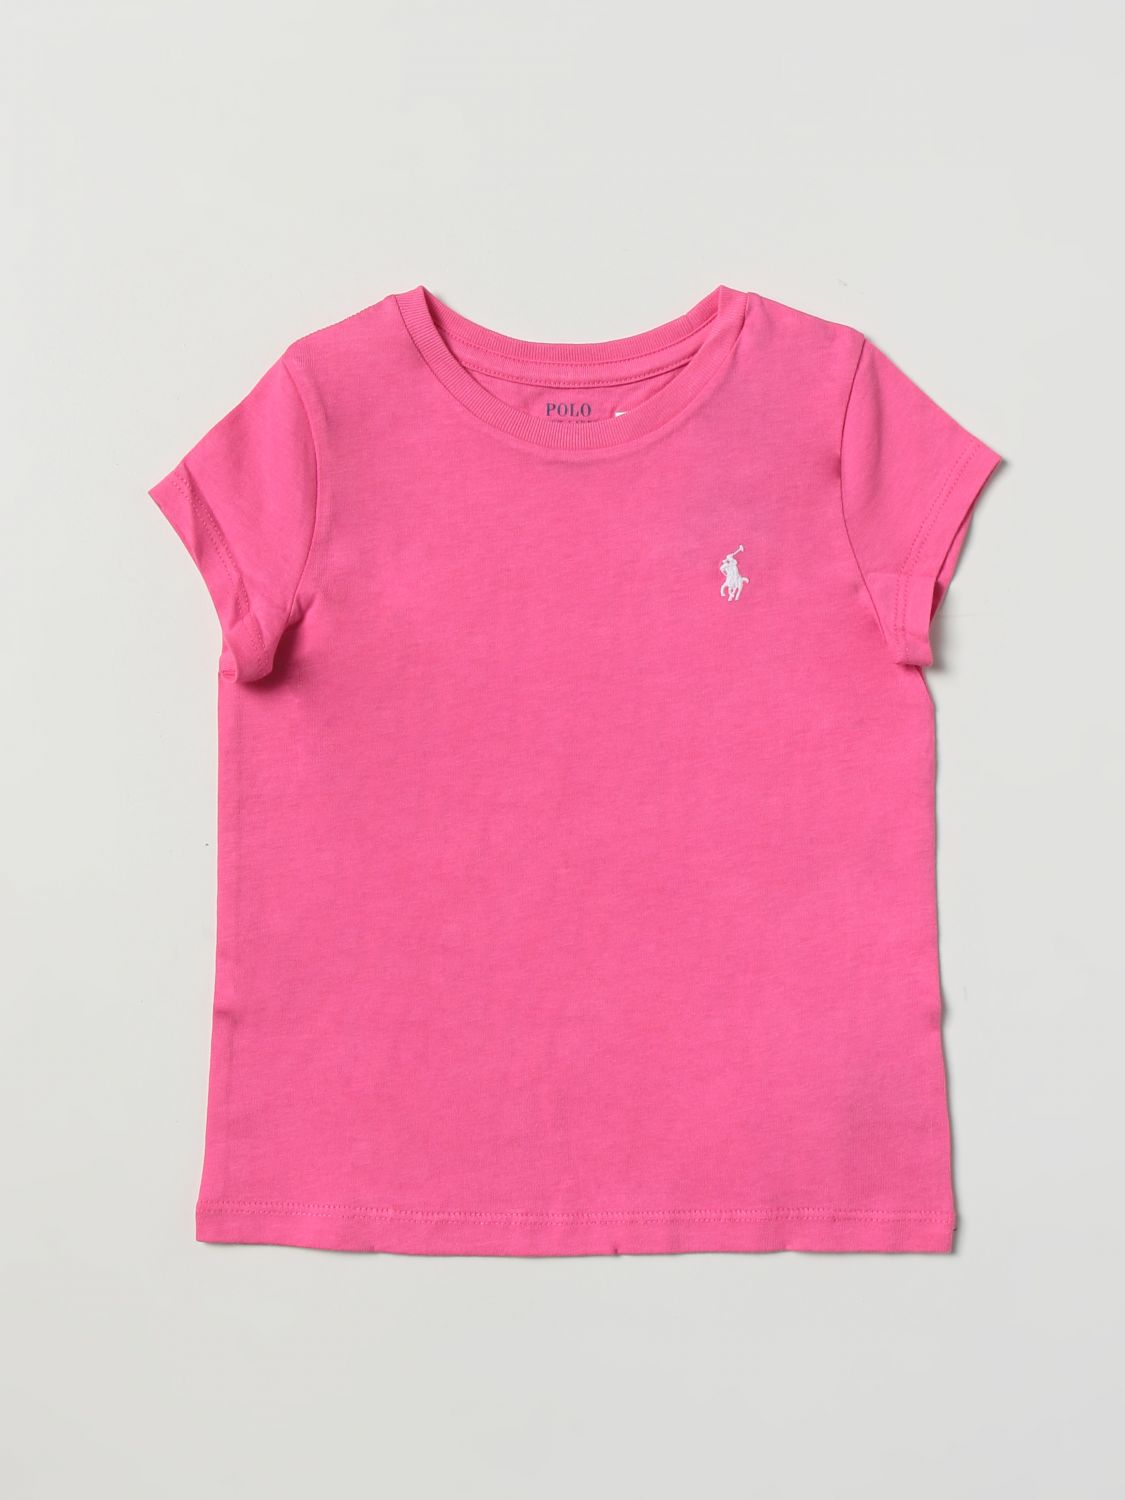 t-shirt polo ralph lauren kids colour pink